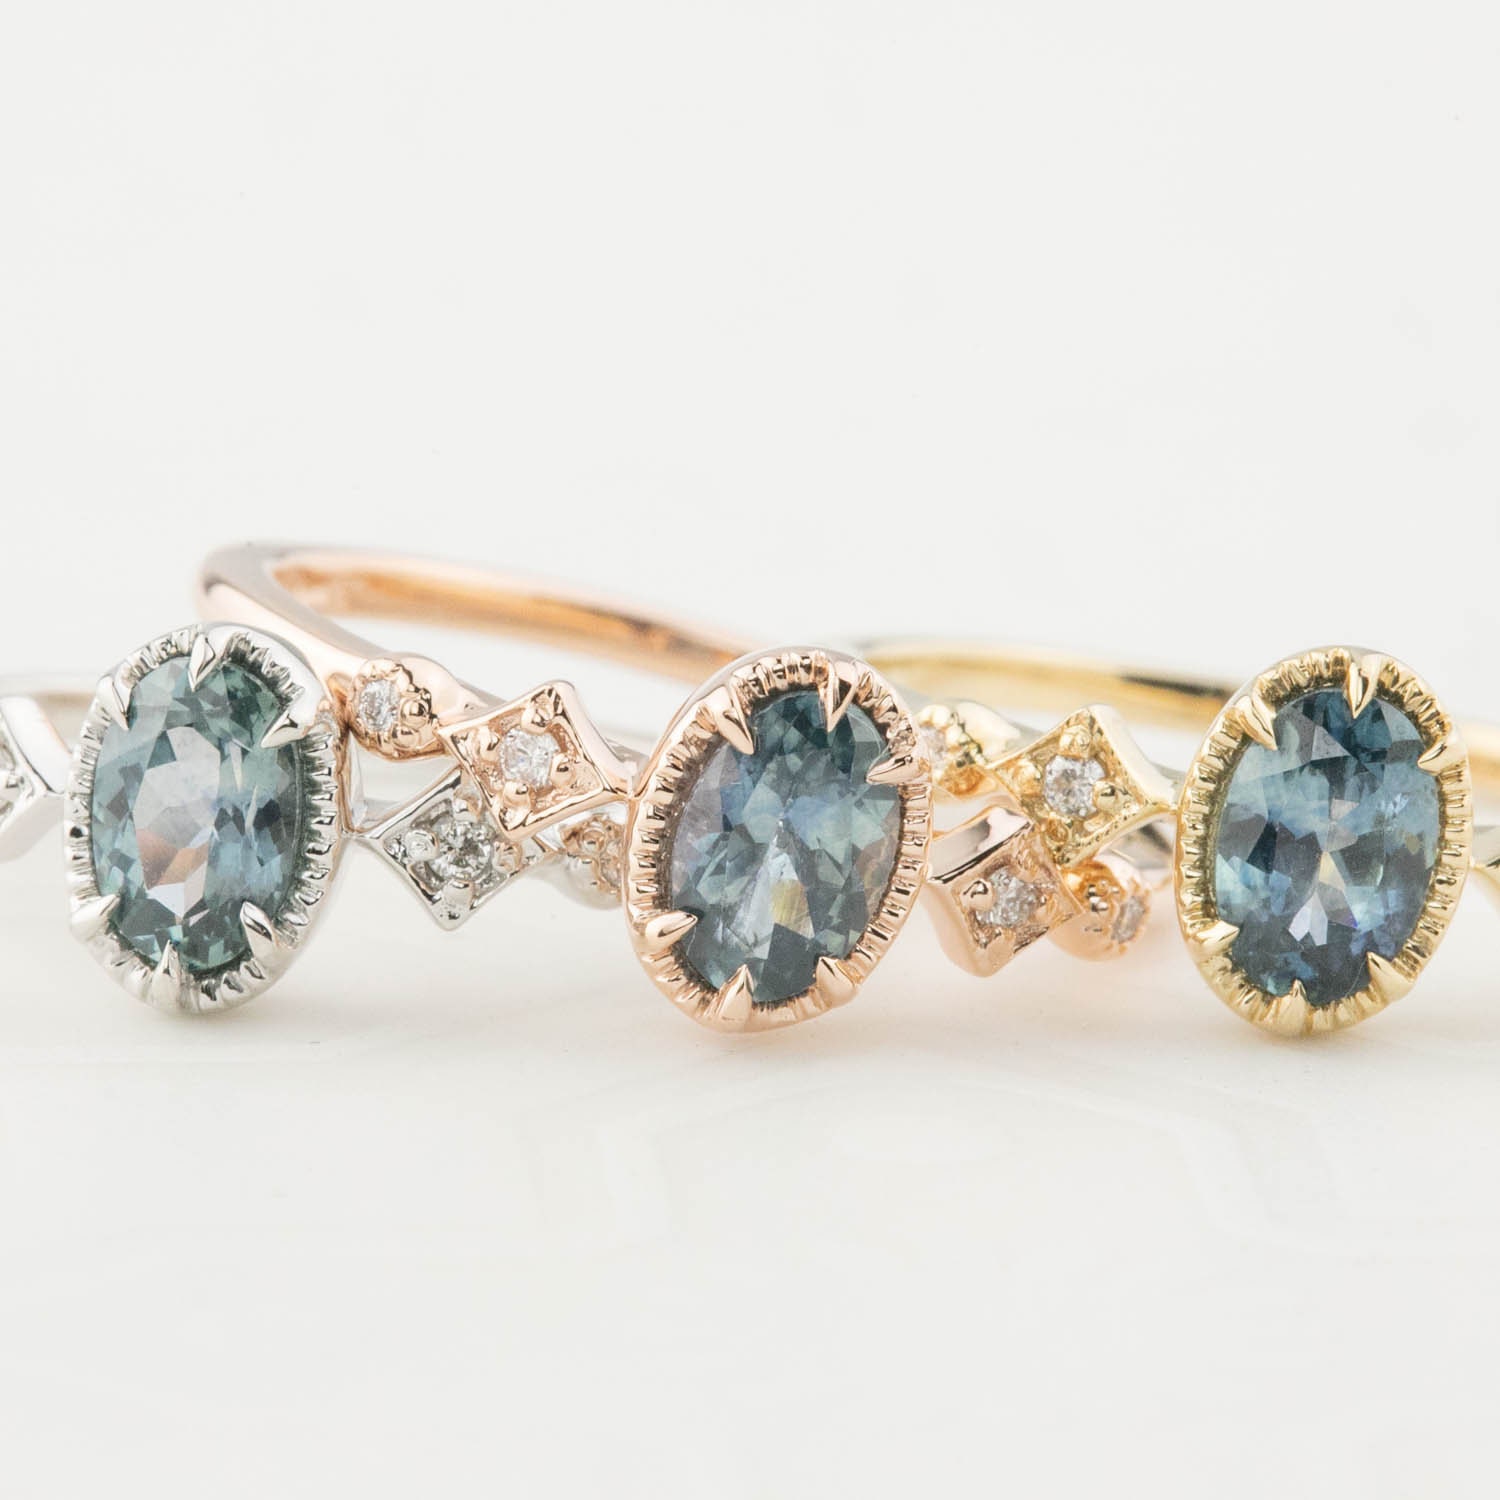 Envero's custom order ring, Montana Sapphire Engagement Ring